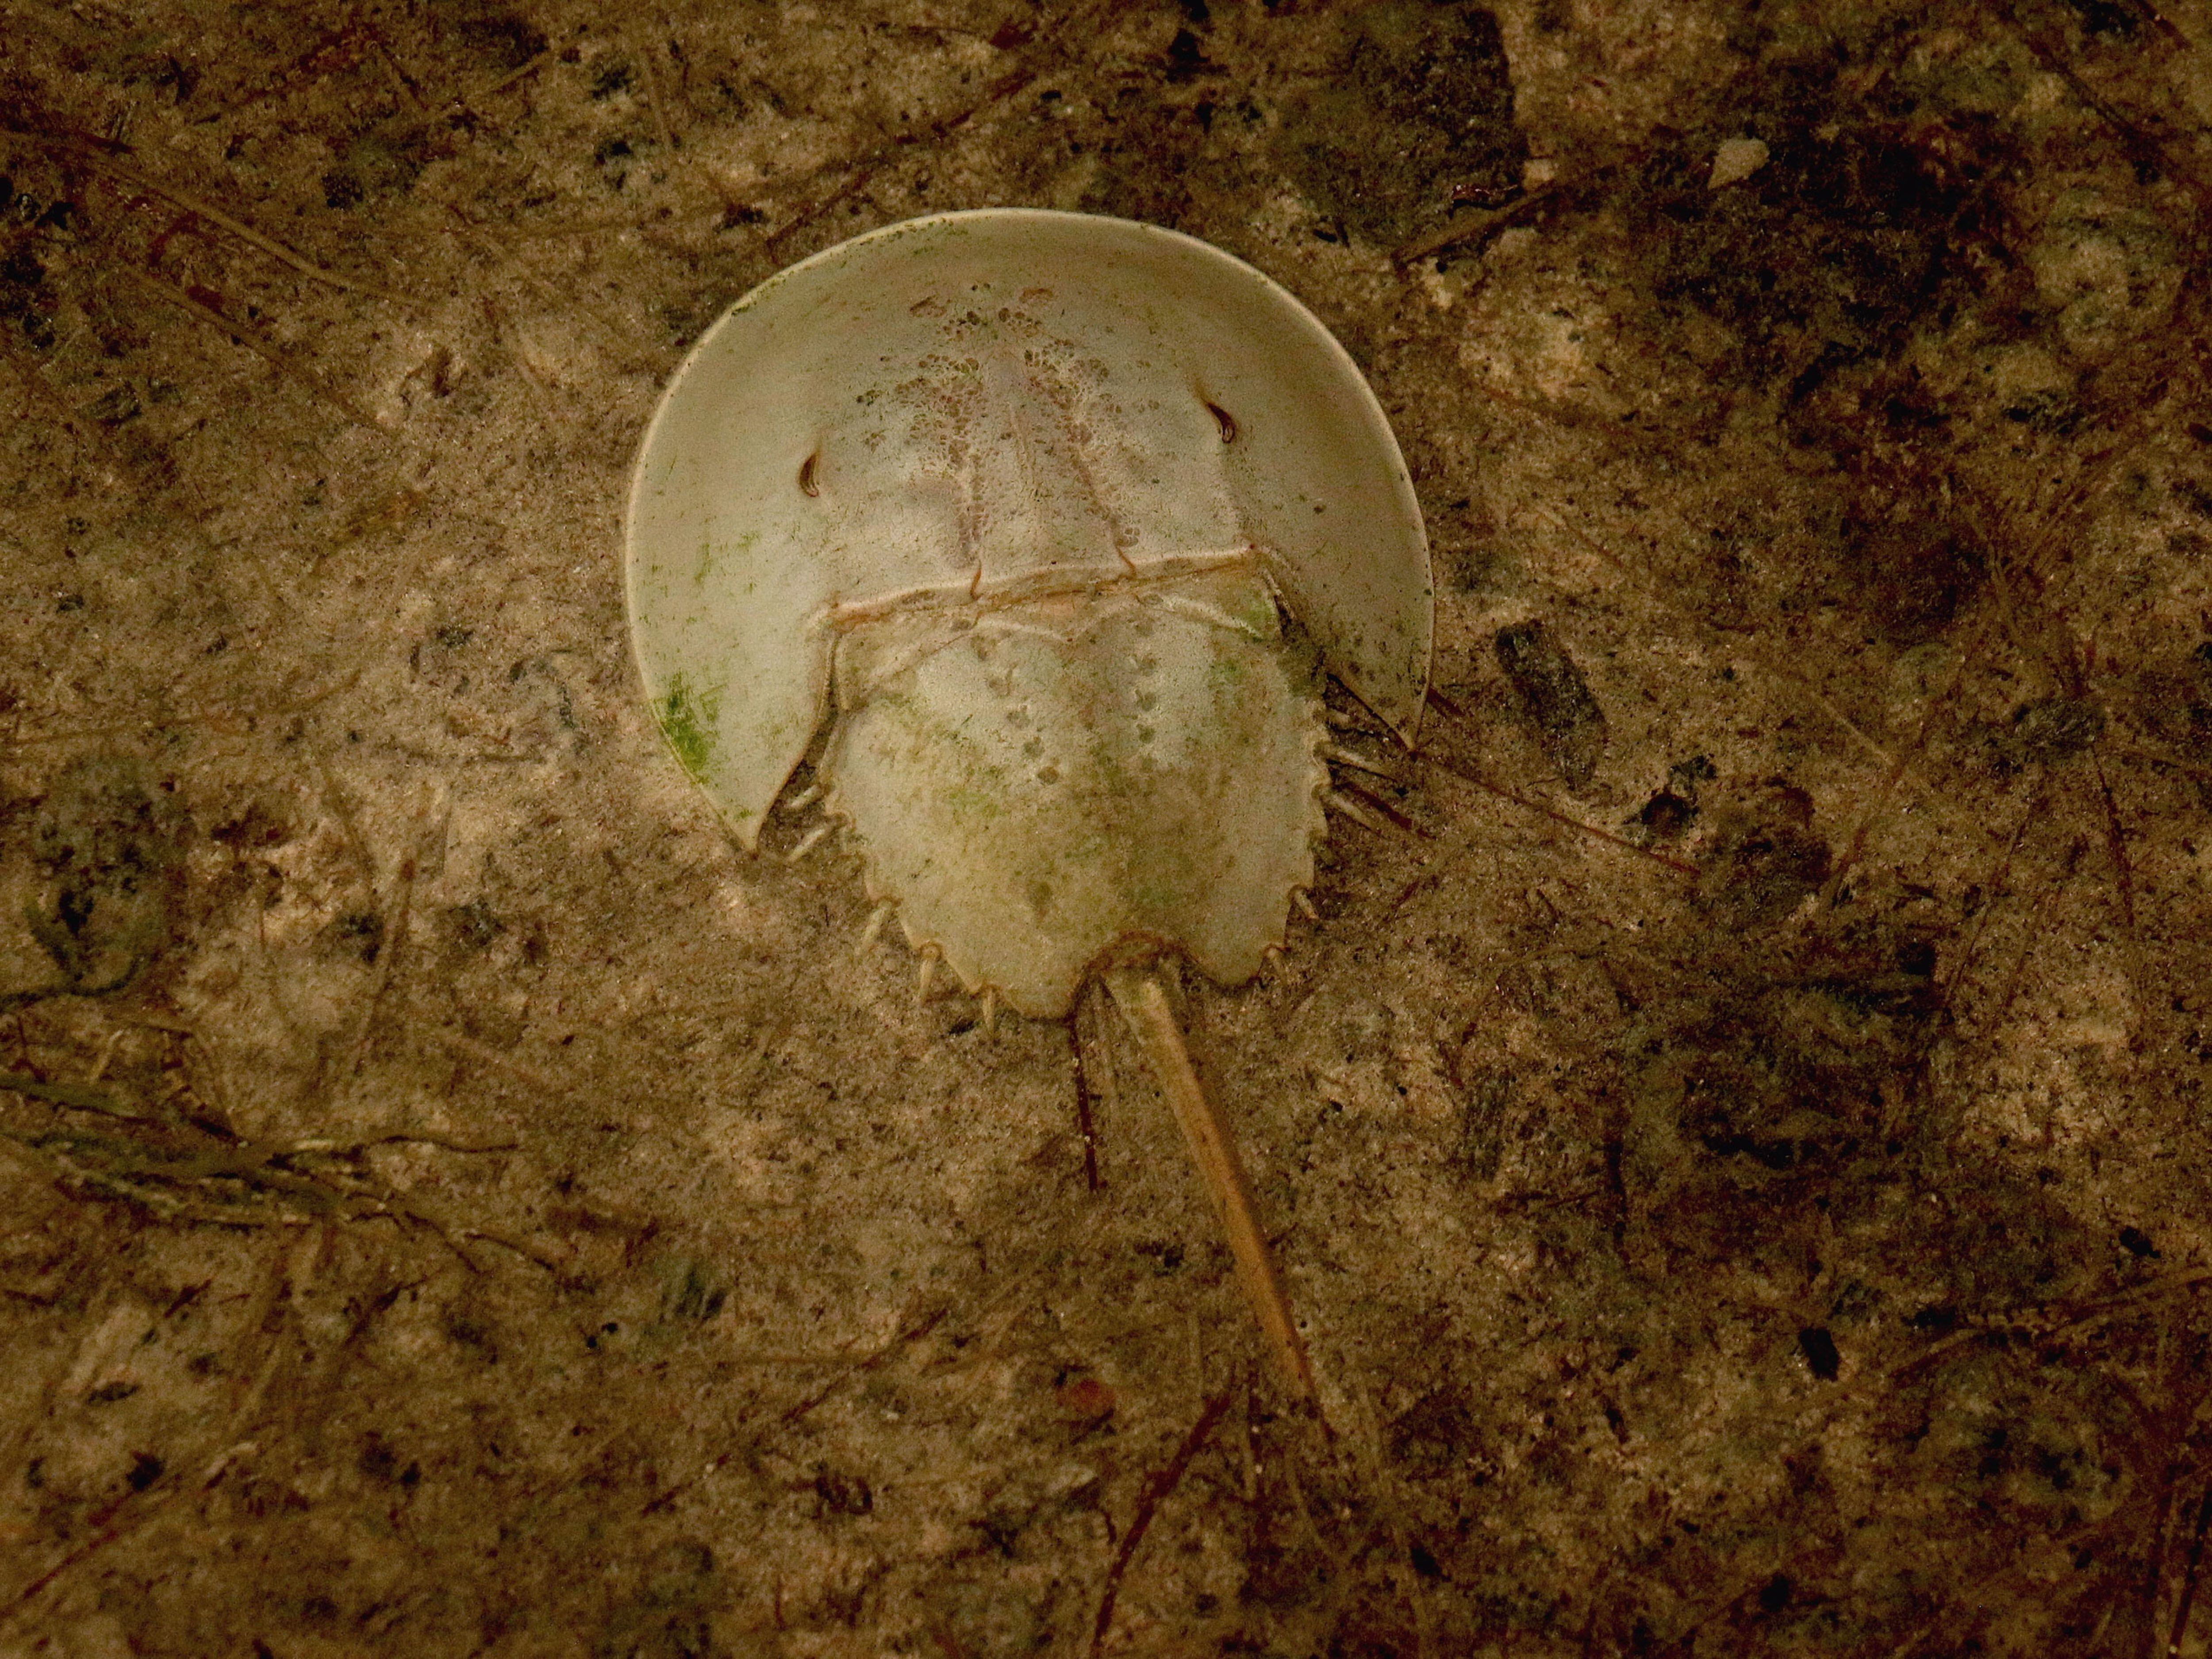 Una ejemplar de 'Limulus polyphemus', en el fondo del mar, en Yucatán (México).